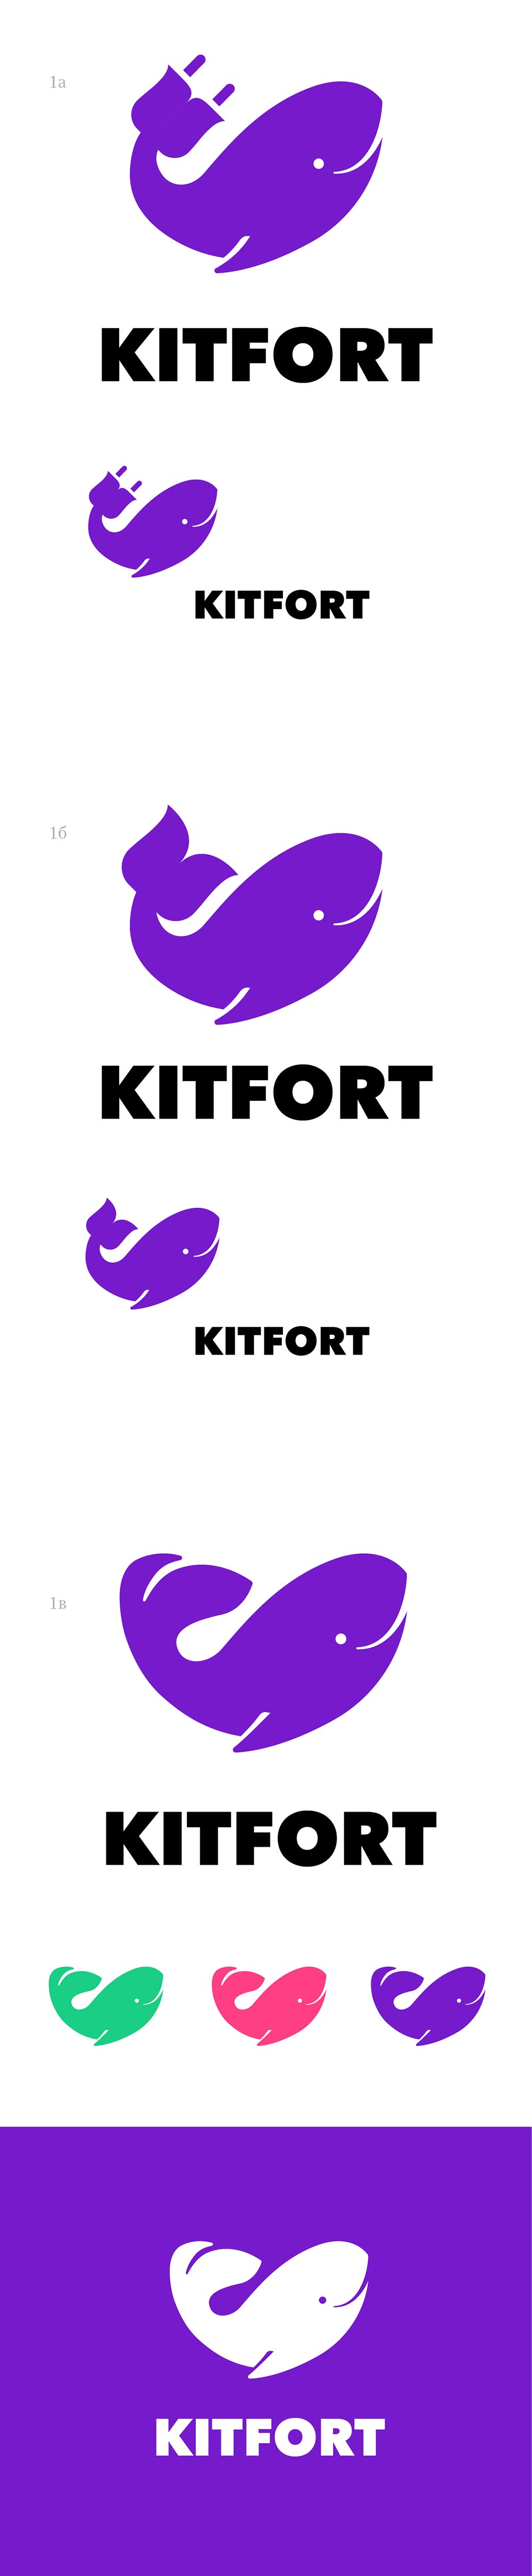 kitfort process 04